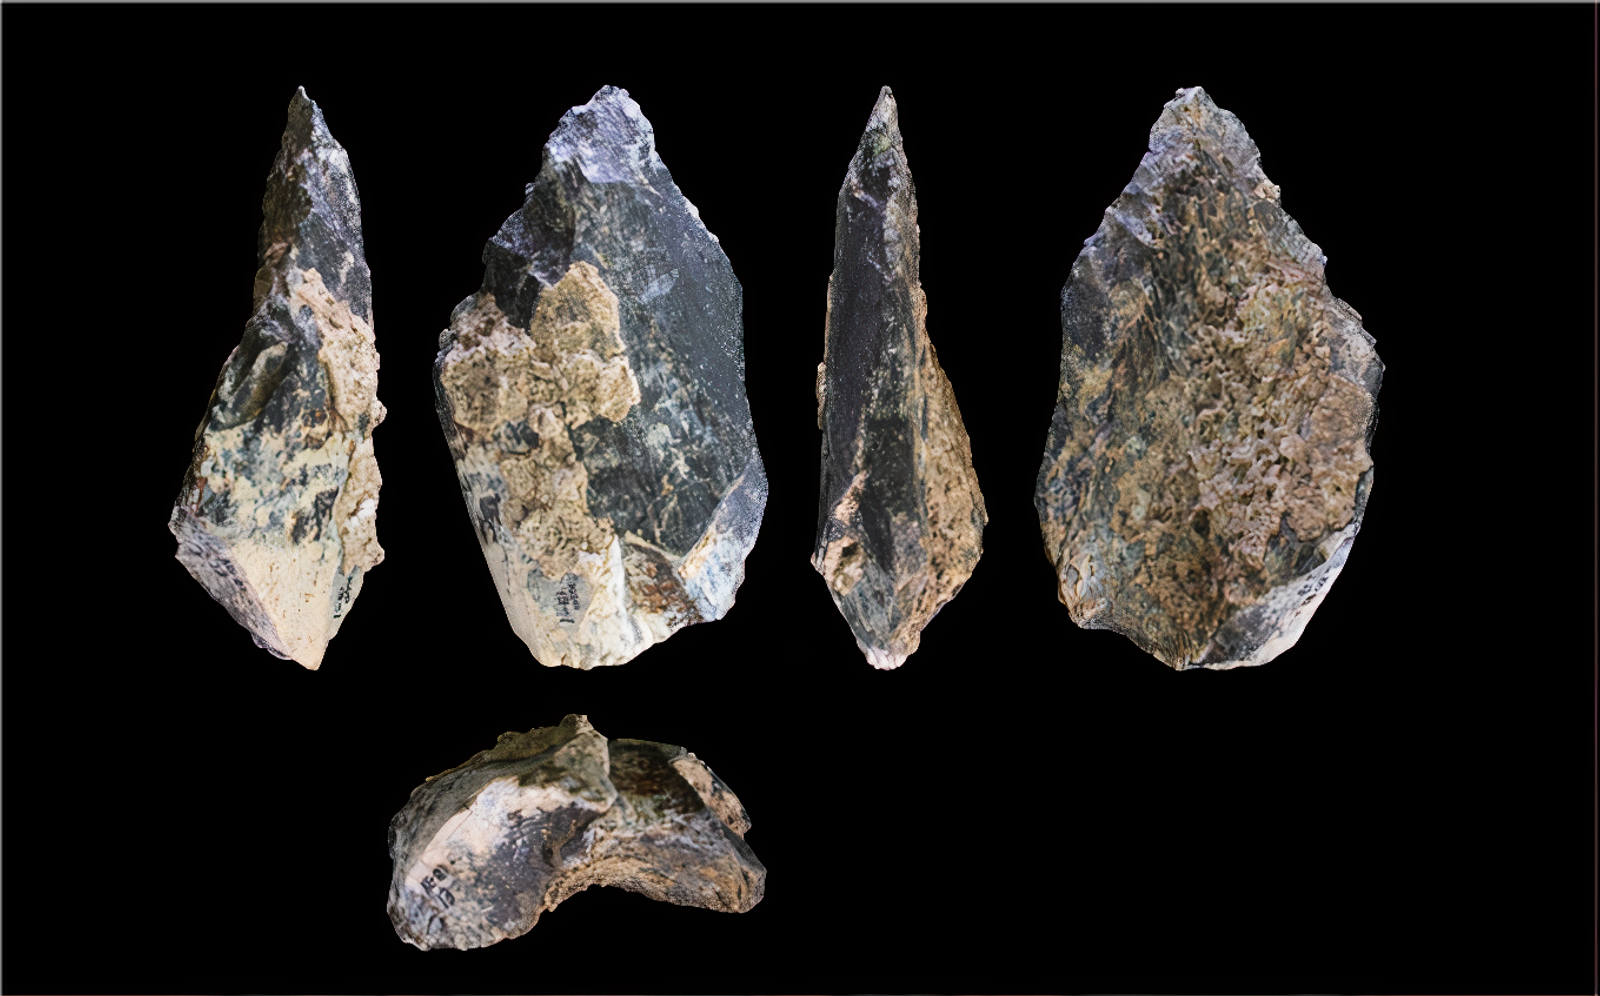 Une hache vieille de 1.4 million d’années découverte en Éthiopie